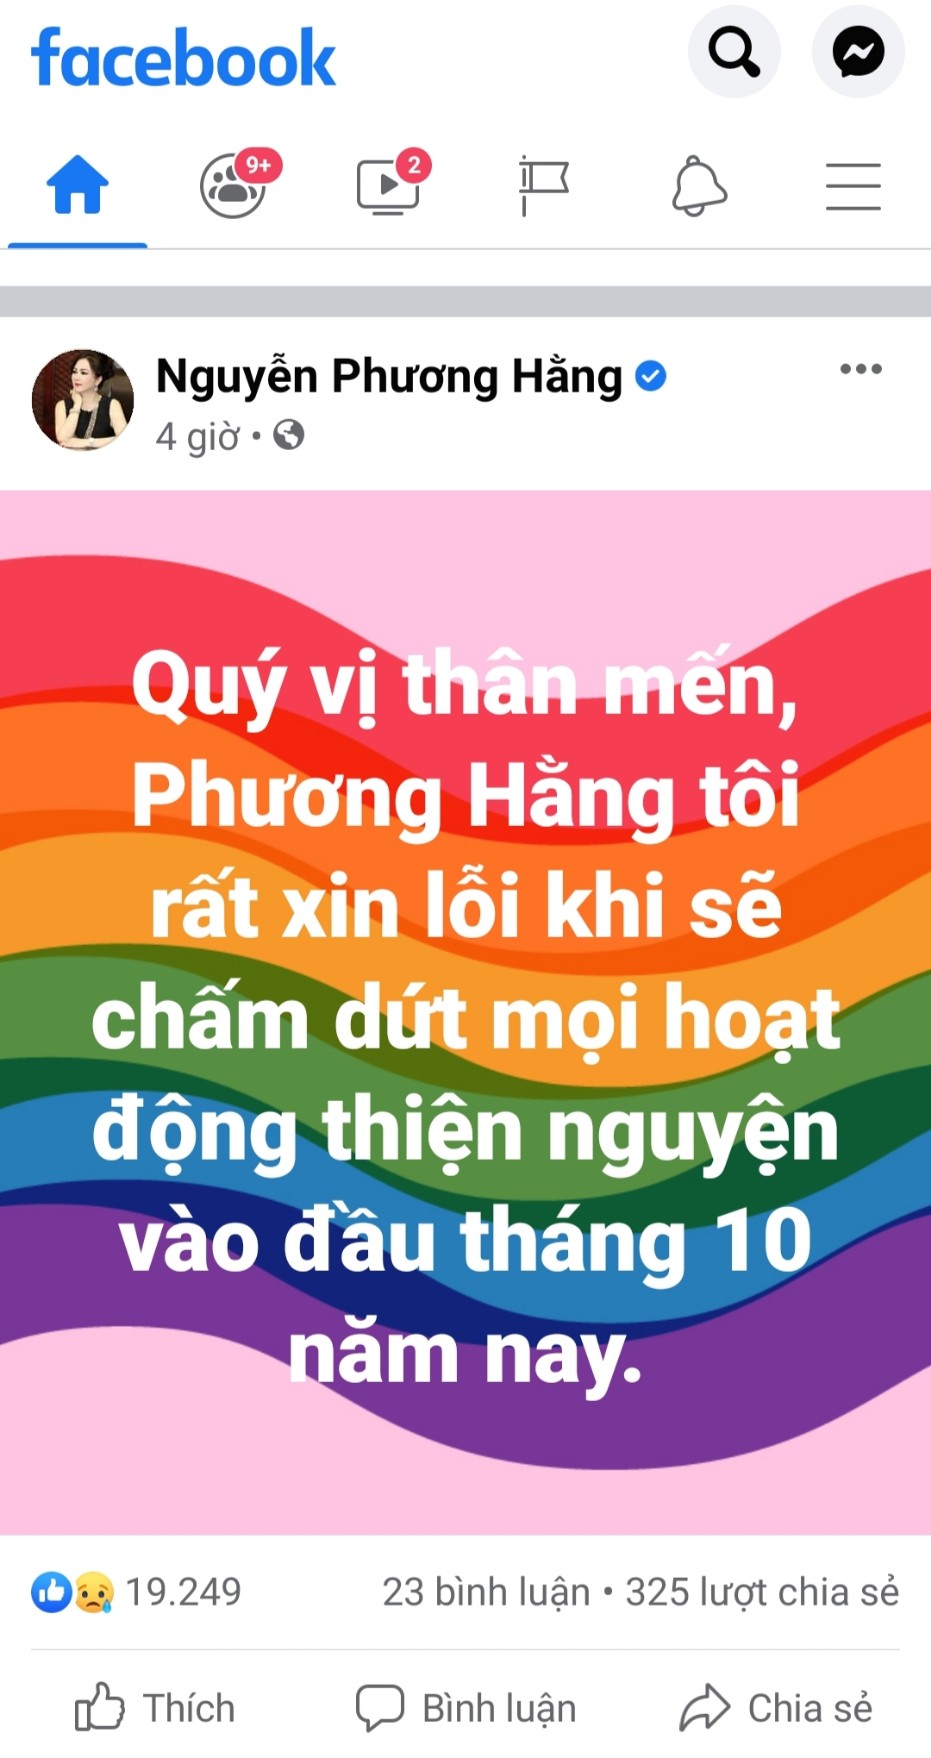 Thông báo từ facebook cá nhân của bà Nguyễn Phương Hằng